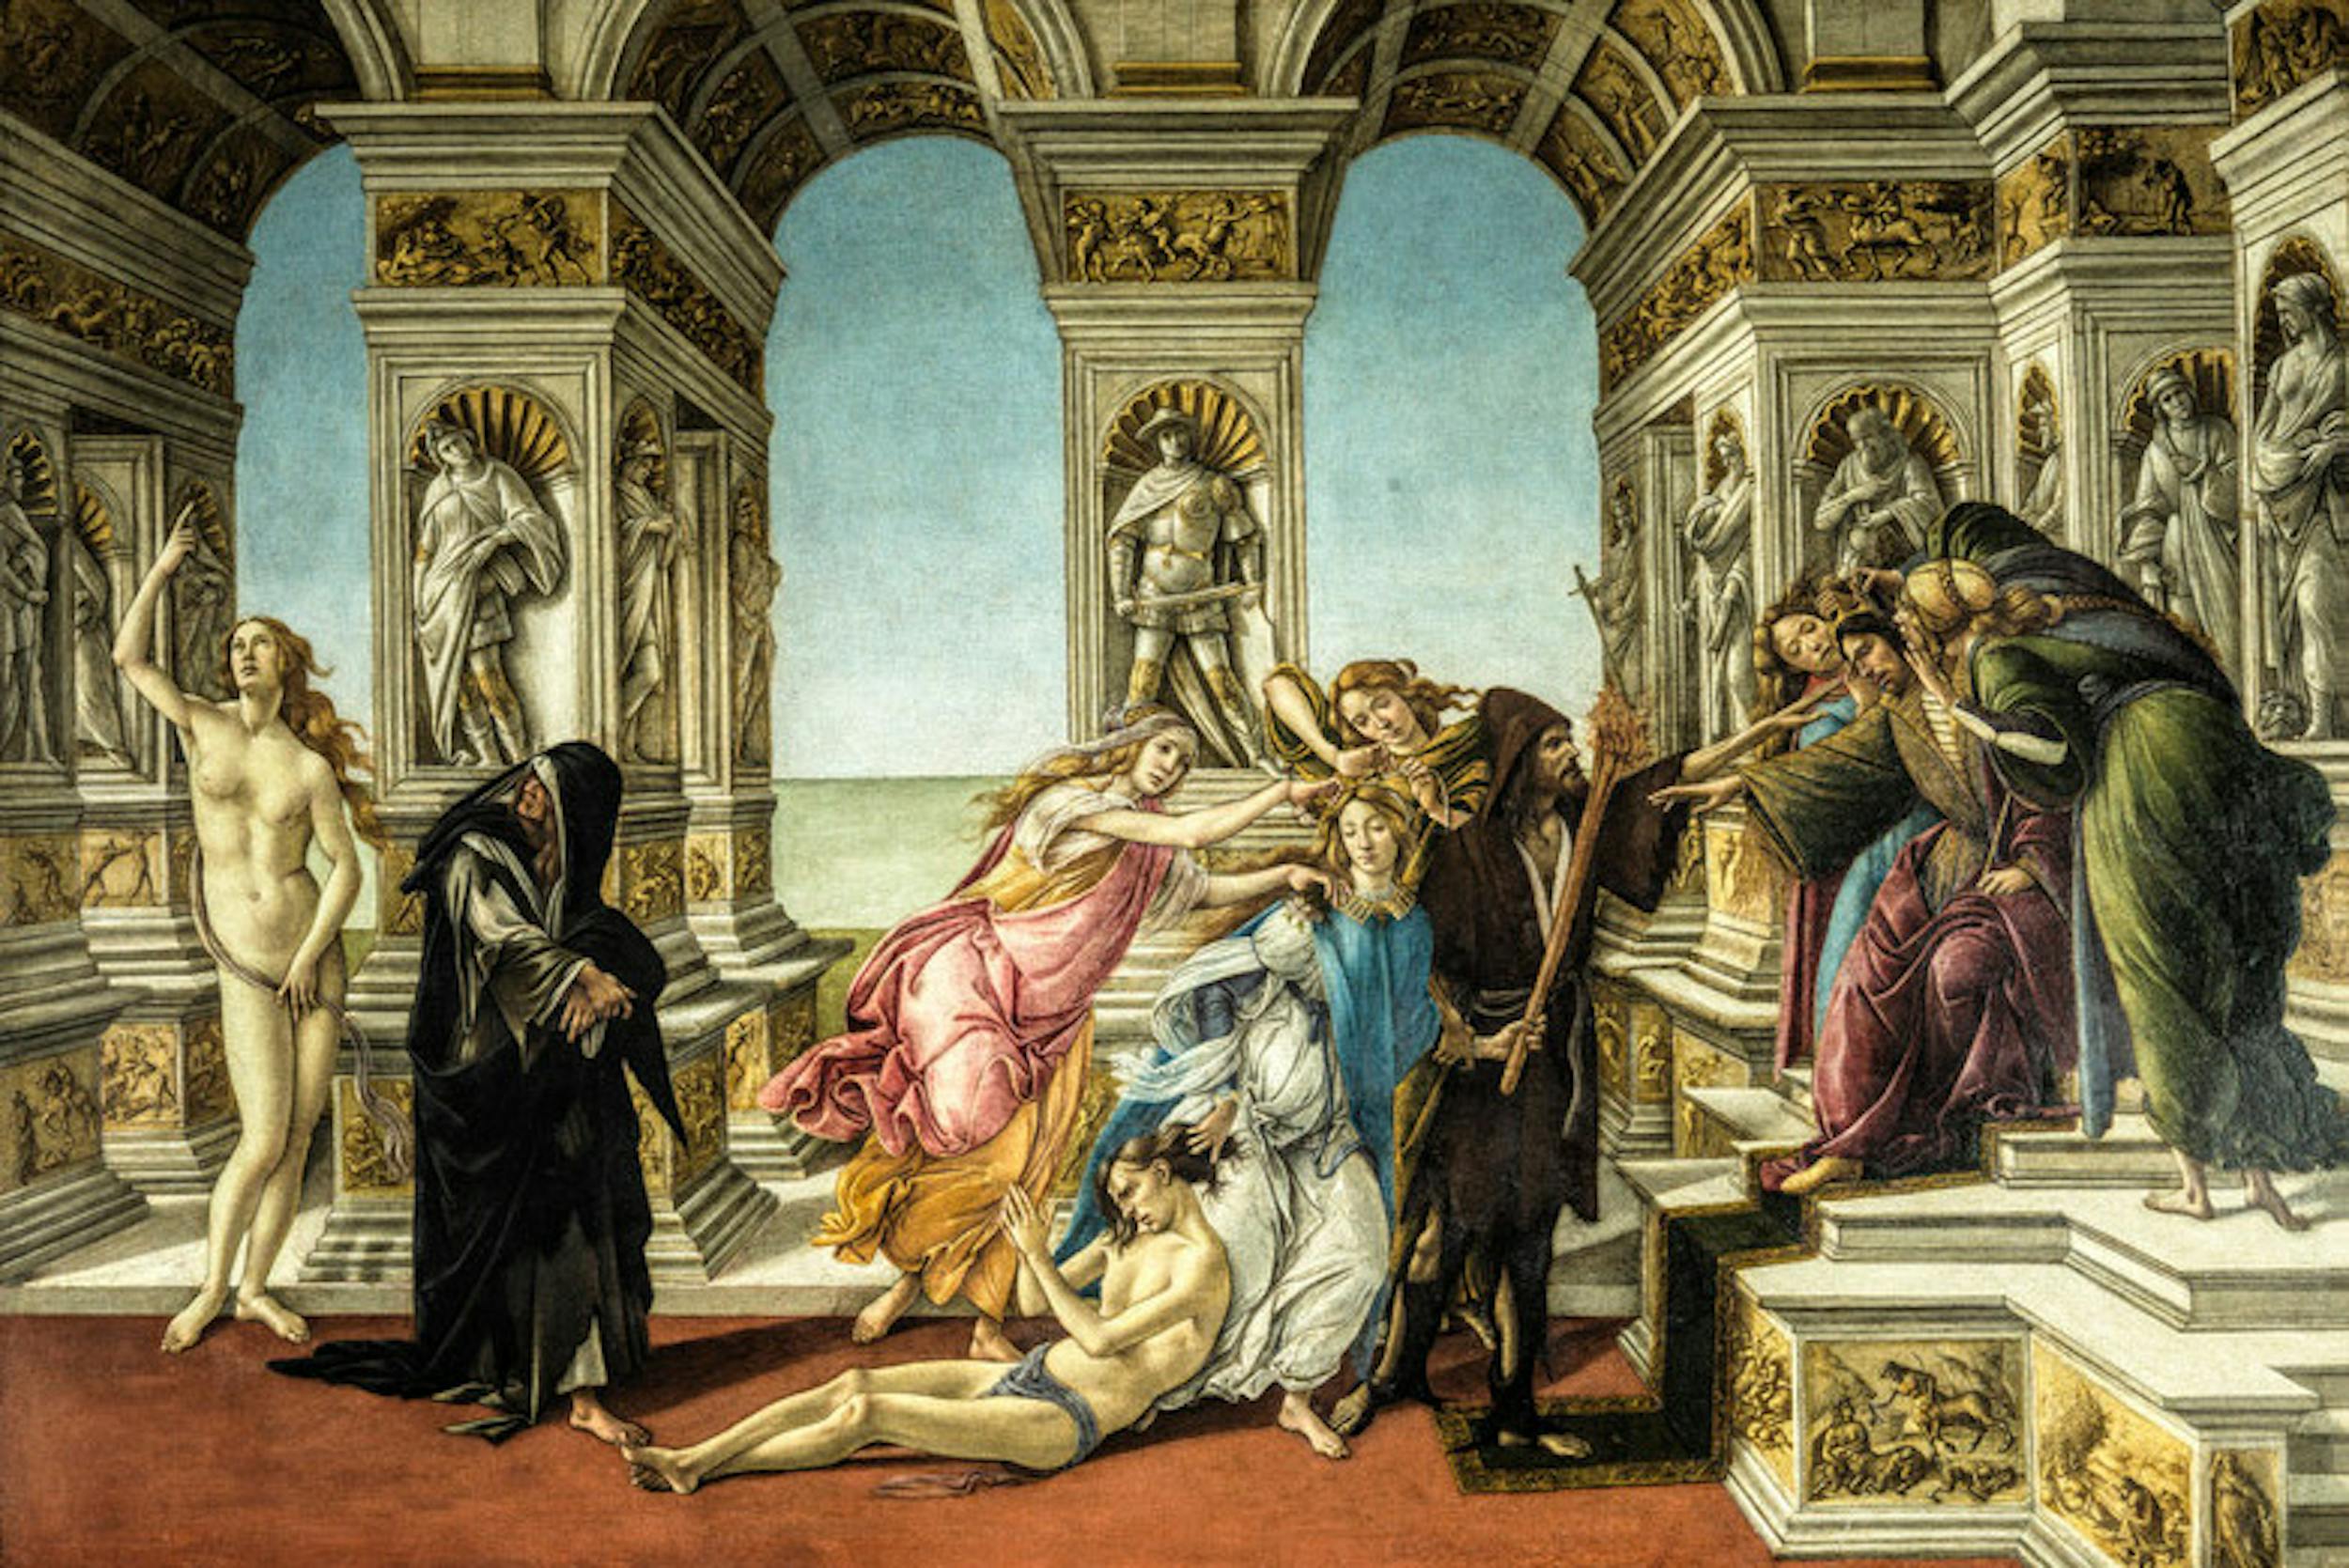 Sandro Botticelli (Firenze ...? - 1510), La Calunnia, sec. XV secolo  (1496 ca.-1497 ca.), tempera su tavola. Firenze, Galleria degli Uffizi